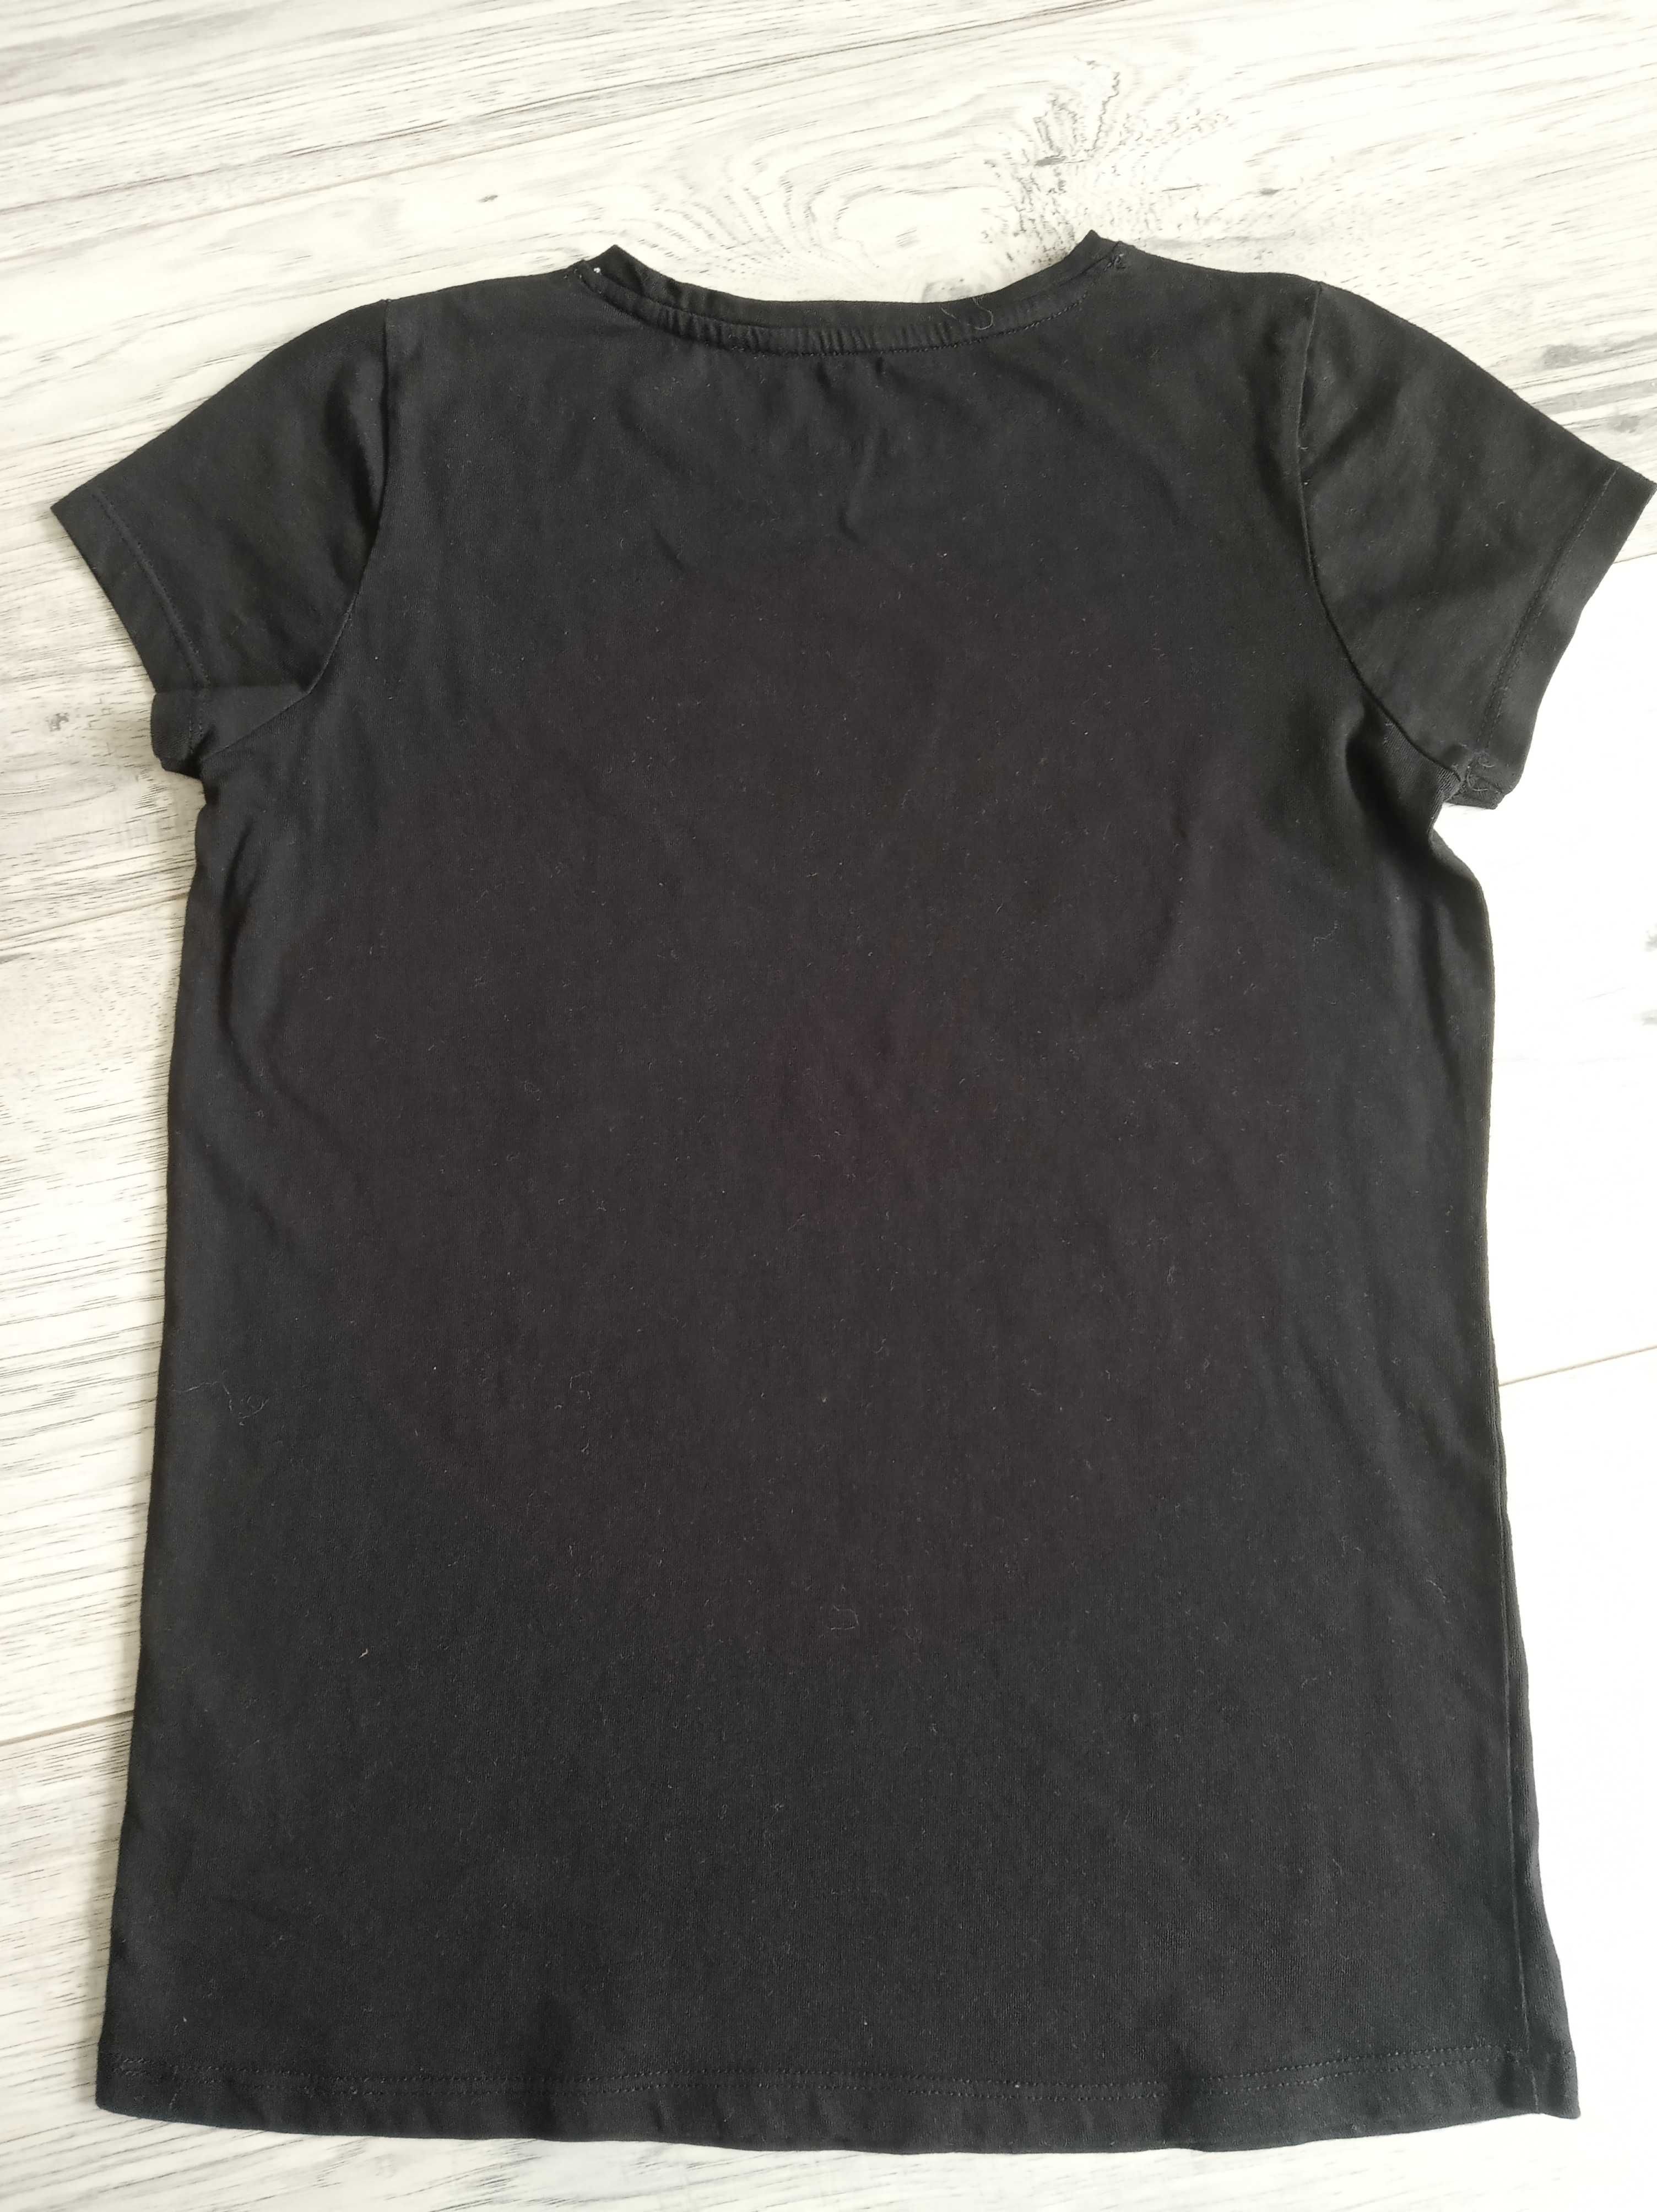 T-Shirt bluzka 5.10.15 rozm. 164